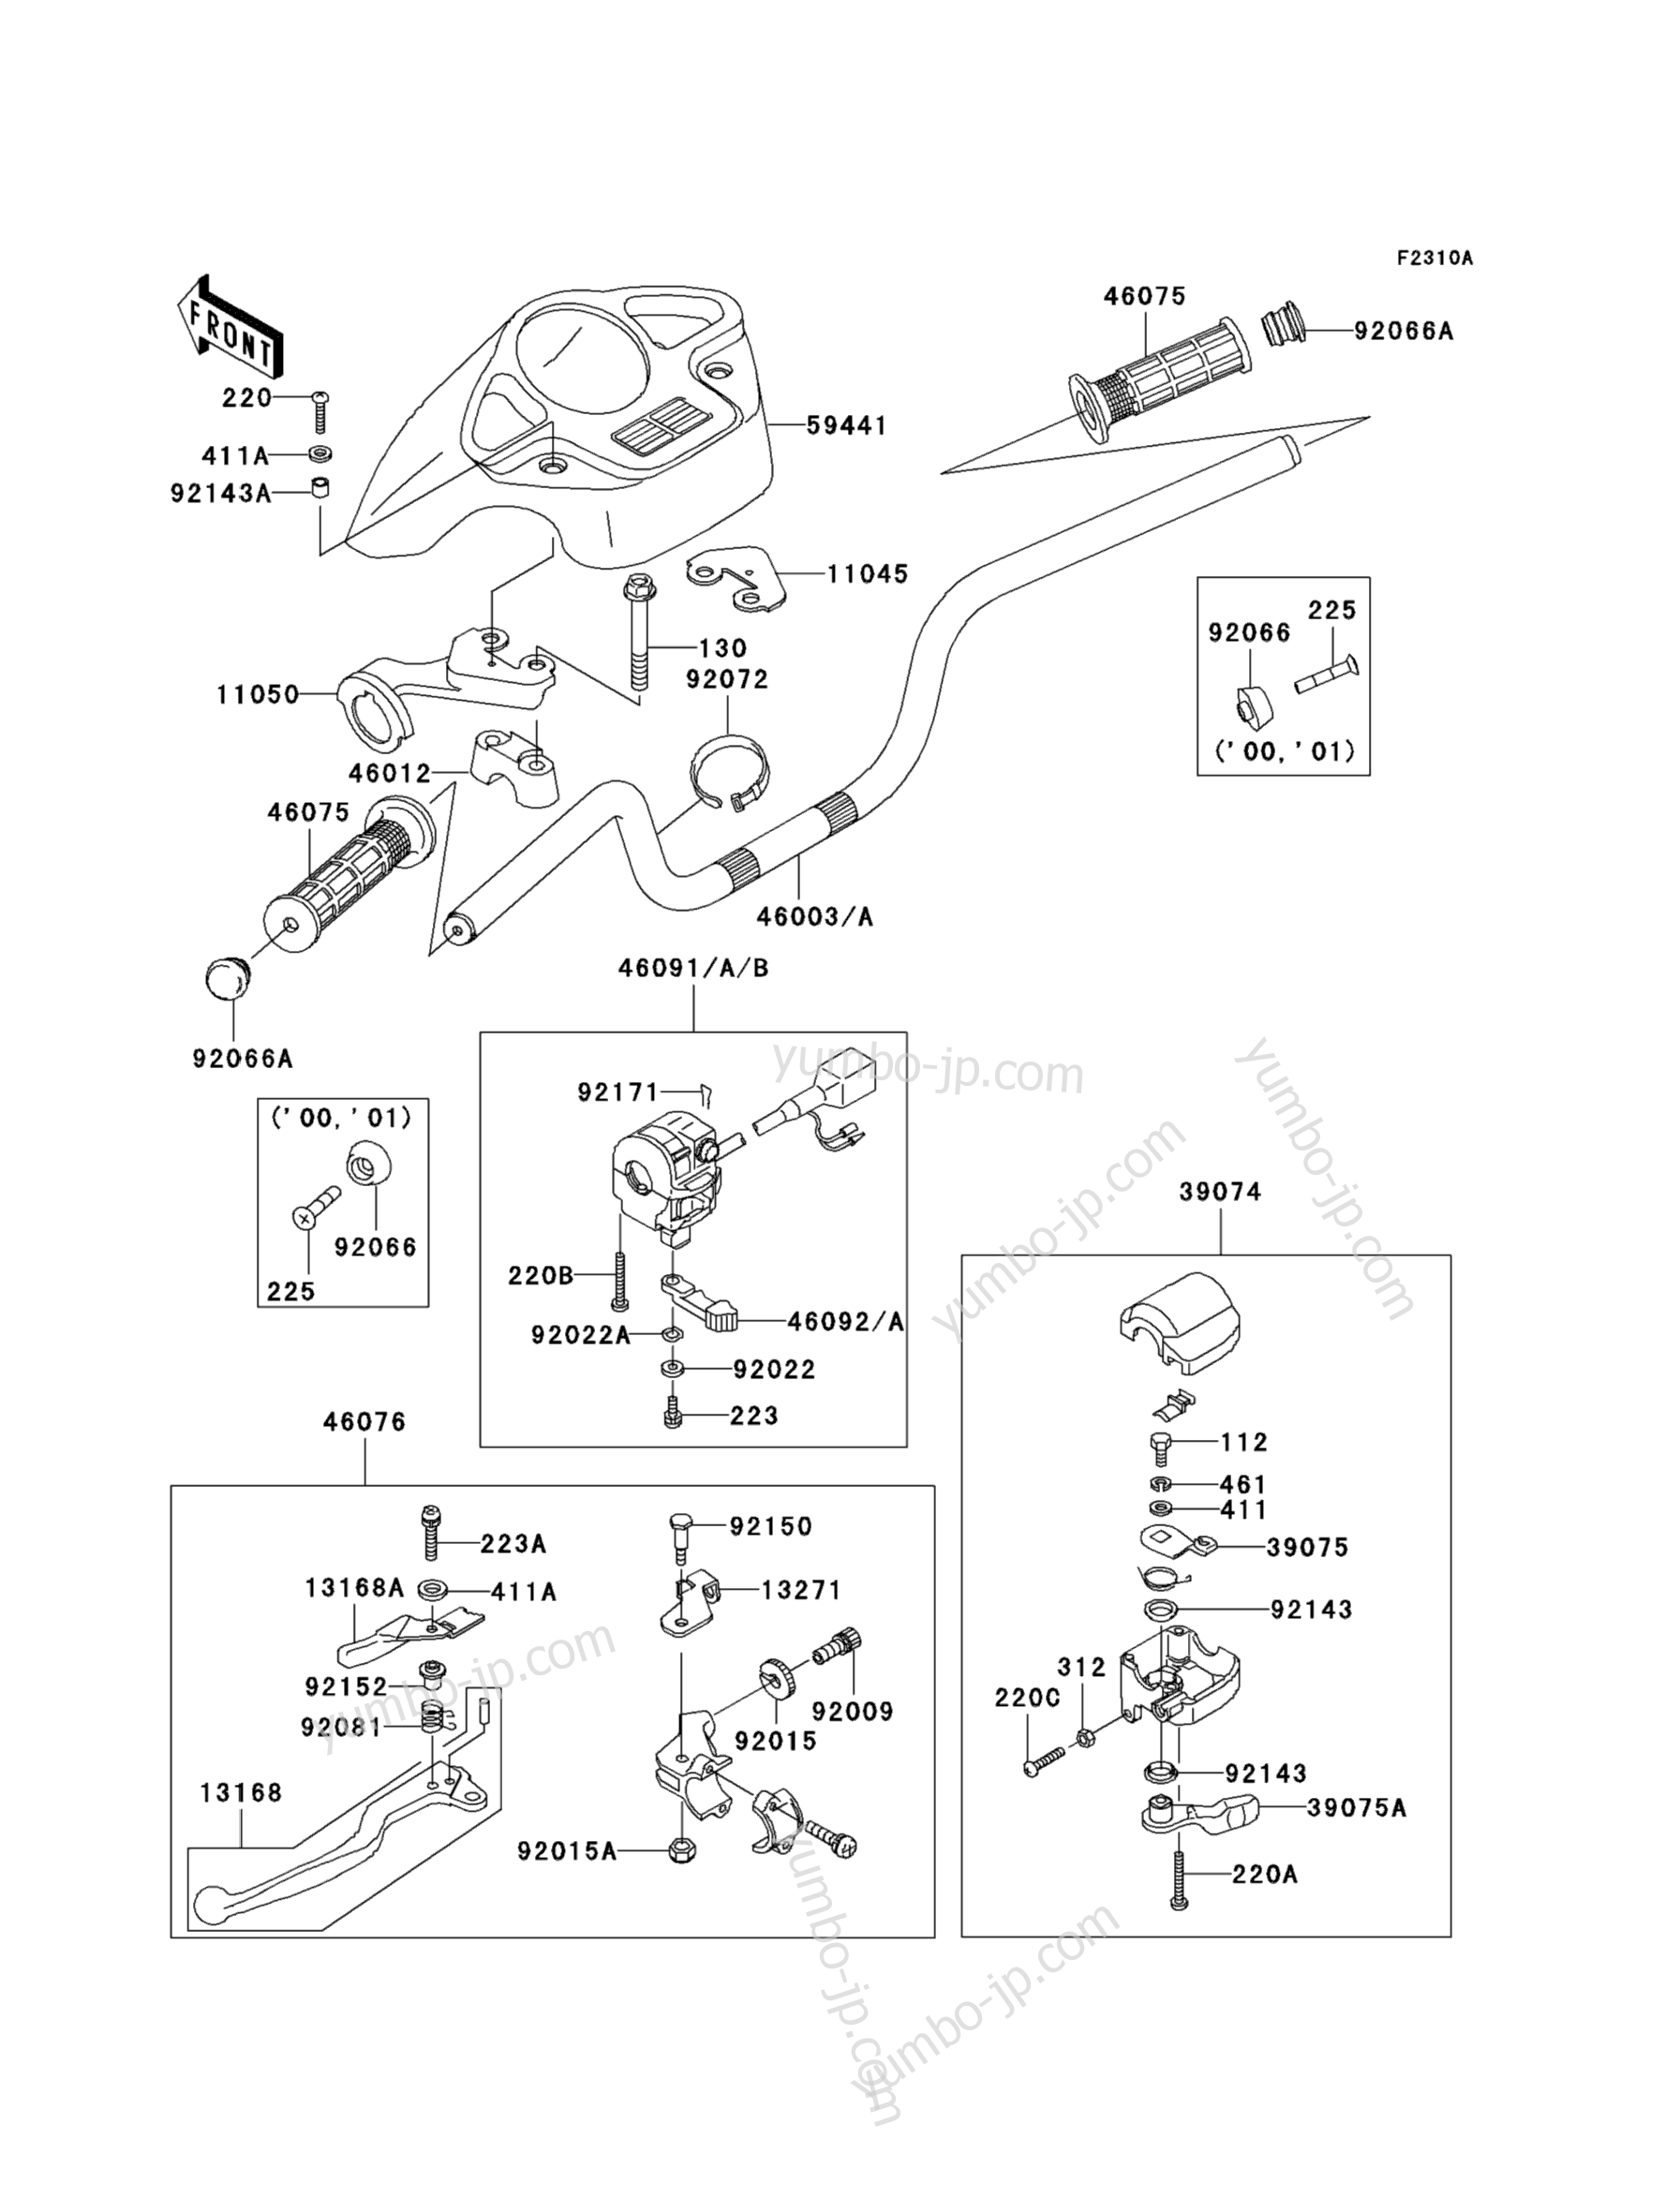 Handlebar (A2/A3/A4) for ATVs KAWASAKI PRAIRIE 300 4X4 (KVF300-A2) 2000 year